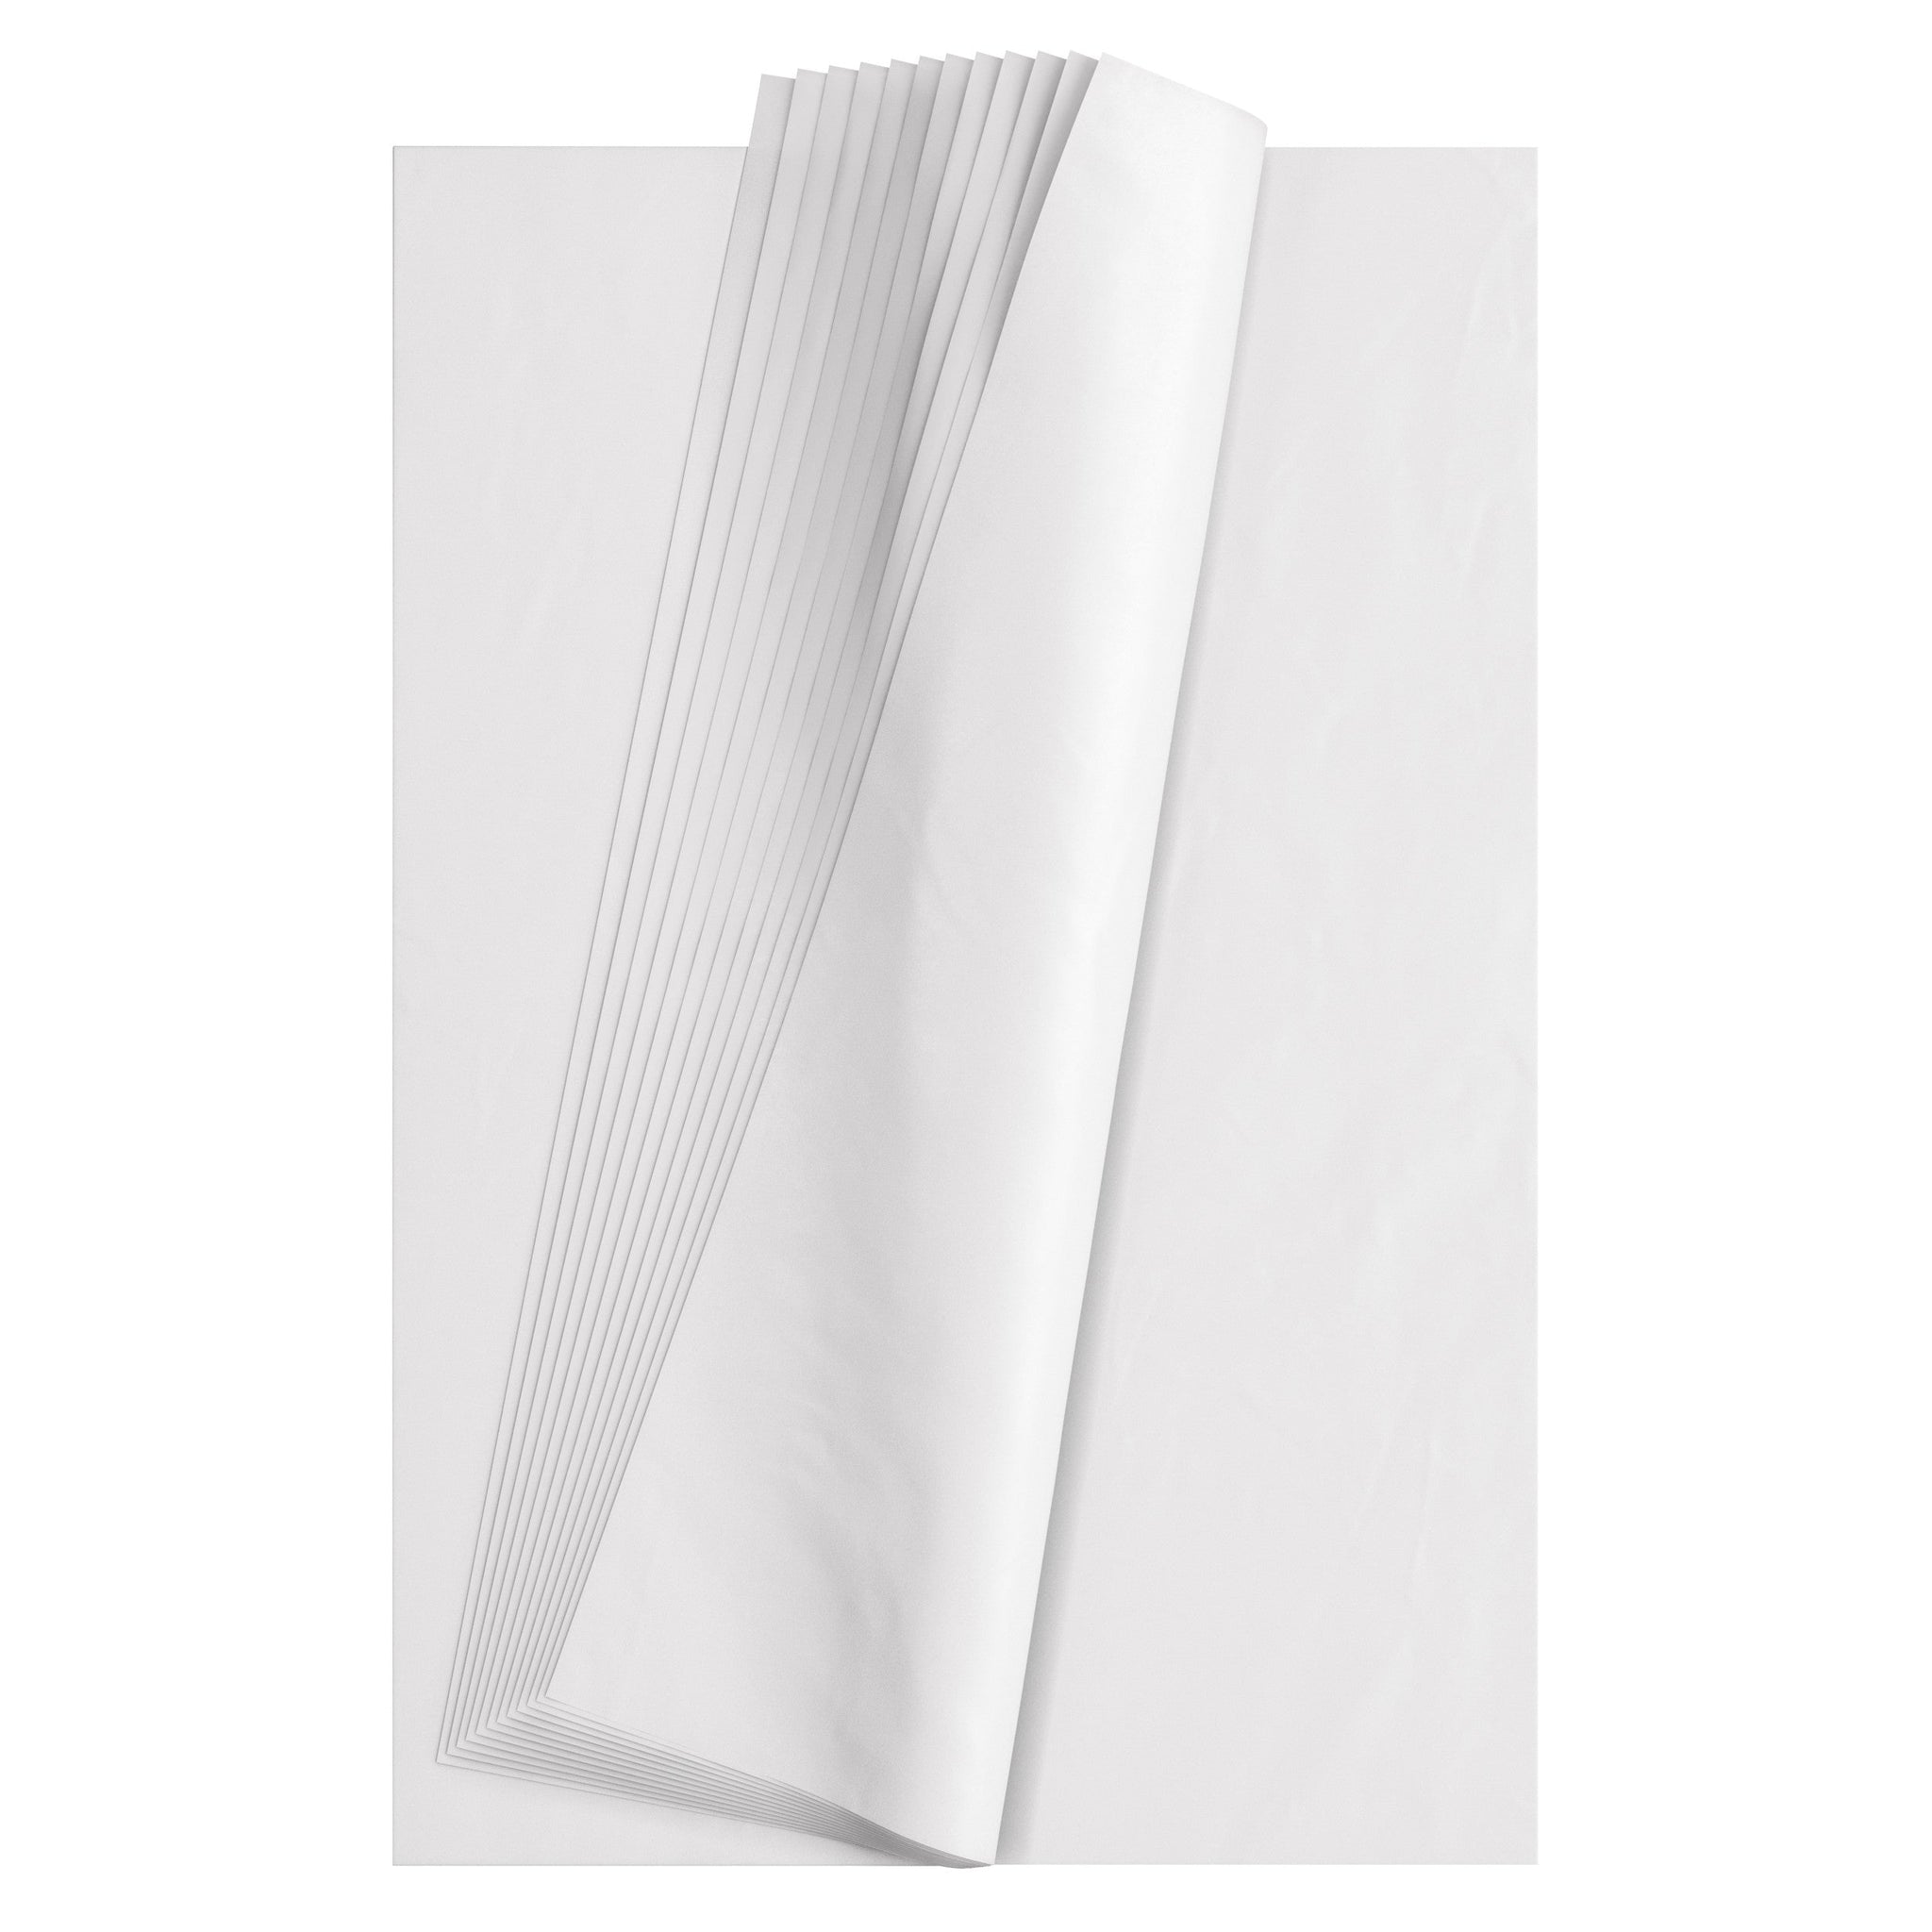 Bulk White Tissue Paper for sale